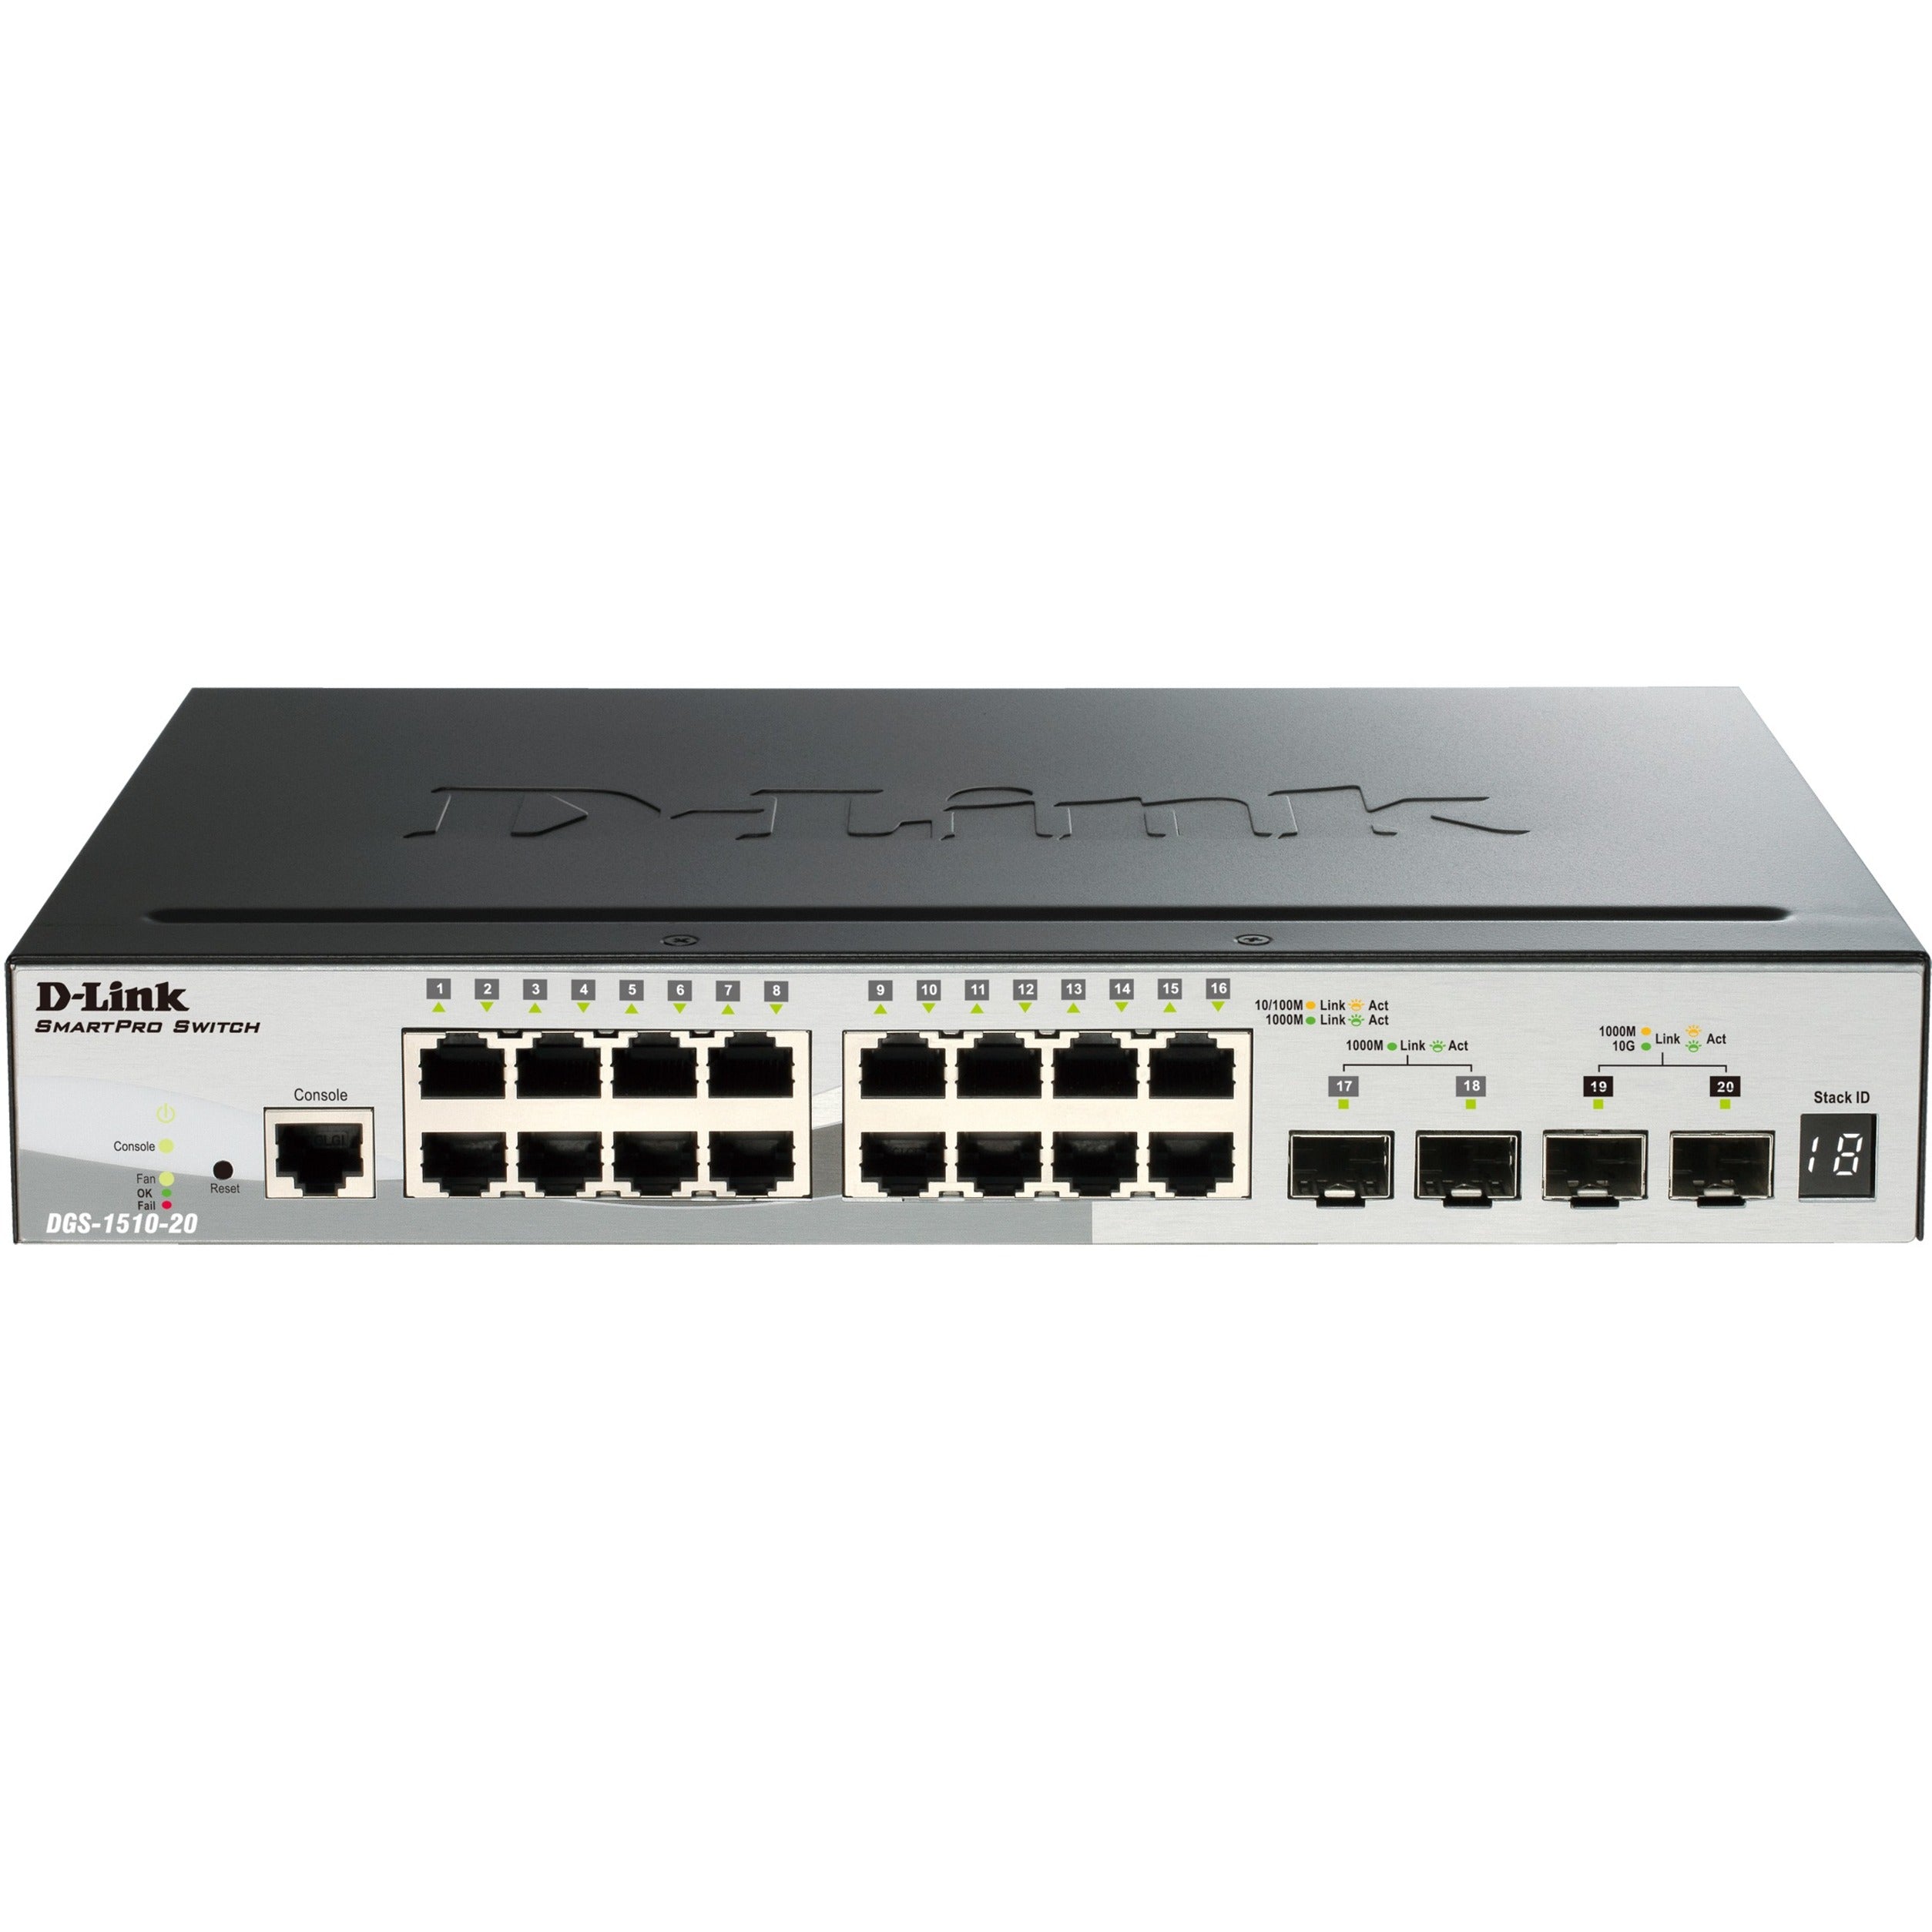 D-Link DGS-1510-20 SmartPro Ethernet Switch, 20-Port Gigabit with 2x 10G SFP+ Slots